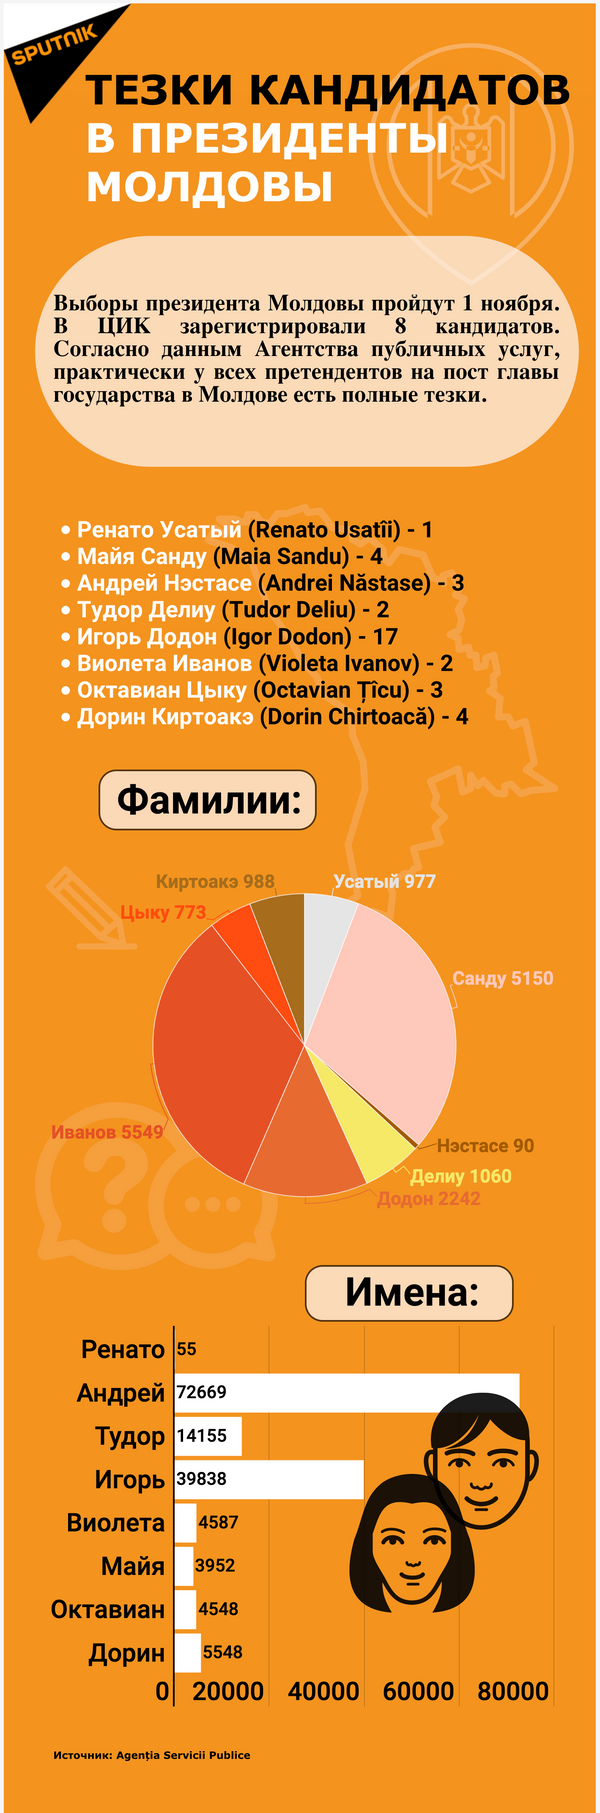 Тезки кандидатов в президенты Молдовы - Sputnik Молдова